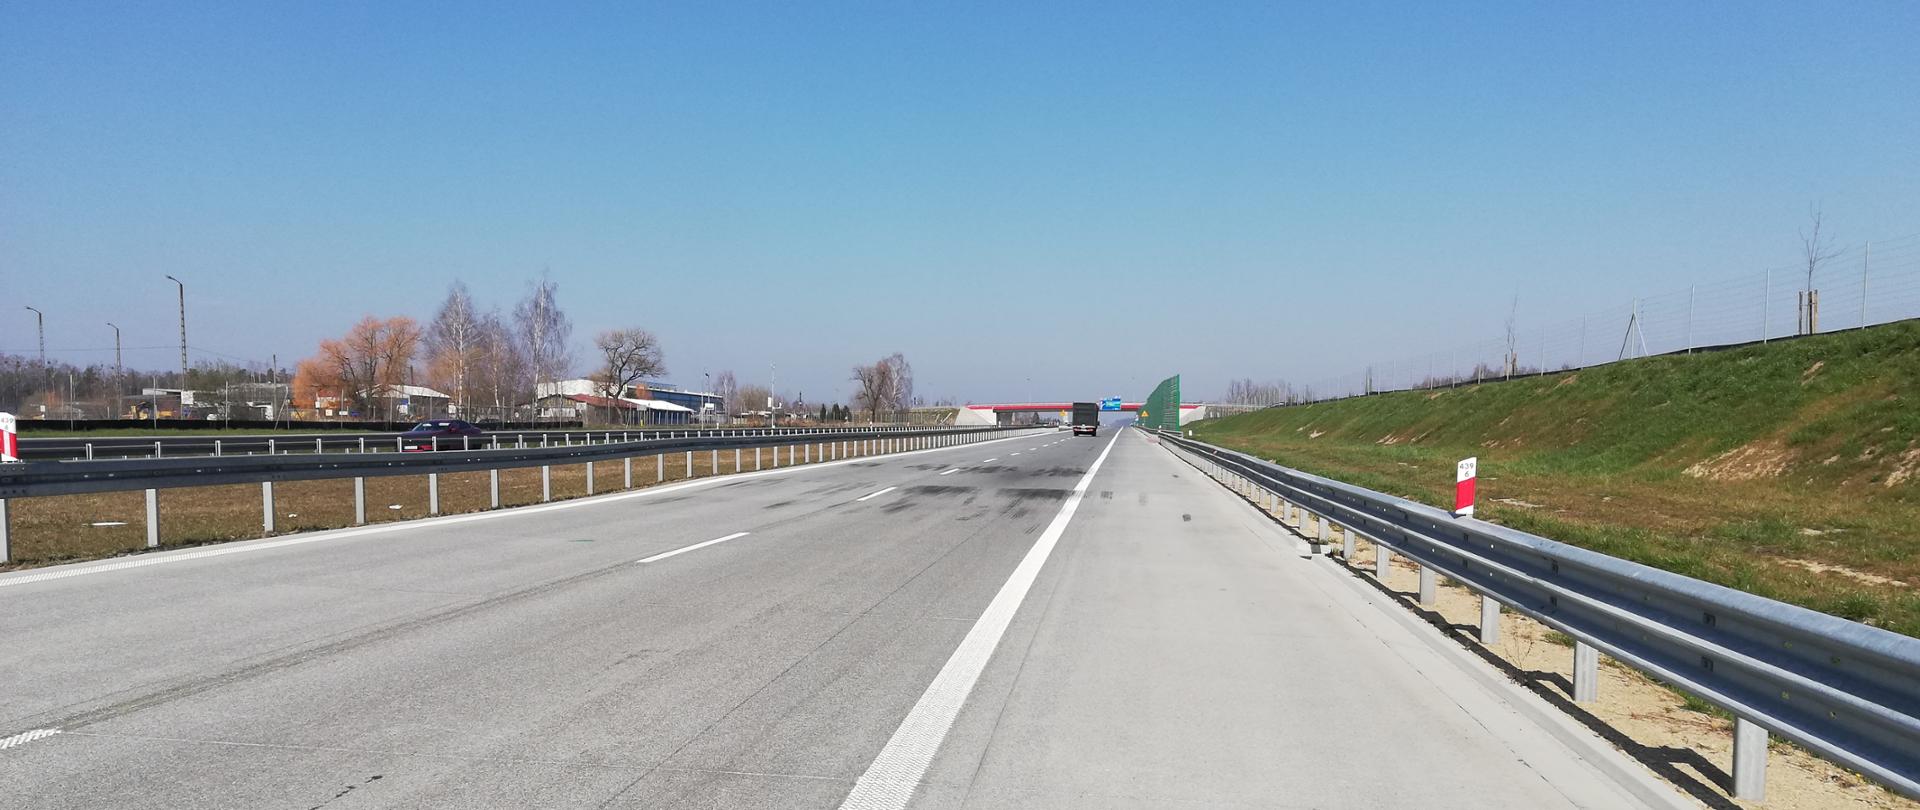 Naprawa nawierzchni betonowej autostrady A1 na jezdni w kierunku północnym, w Konopiskach, na terenie pow. częstochowskiego.